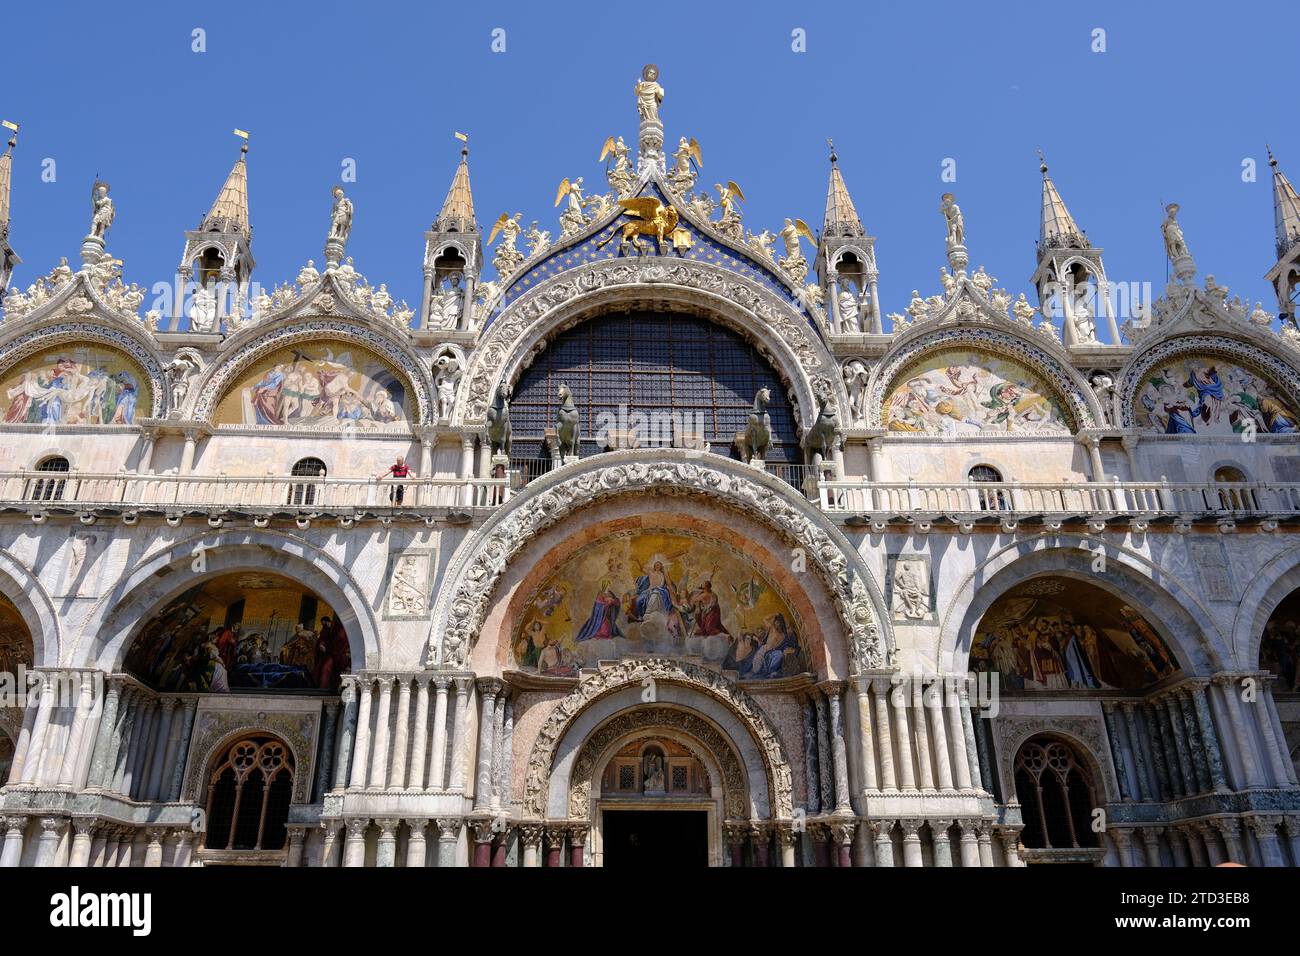 Venecia Italia - Basílica de San Marcos - Basílica de San Marco - Pinturas de fachada oeste Foto de stock